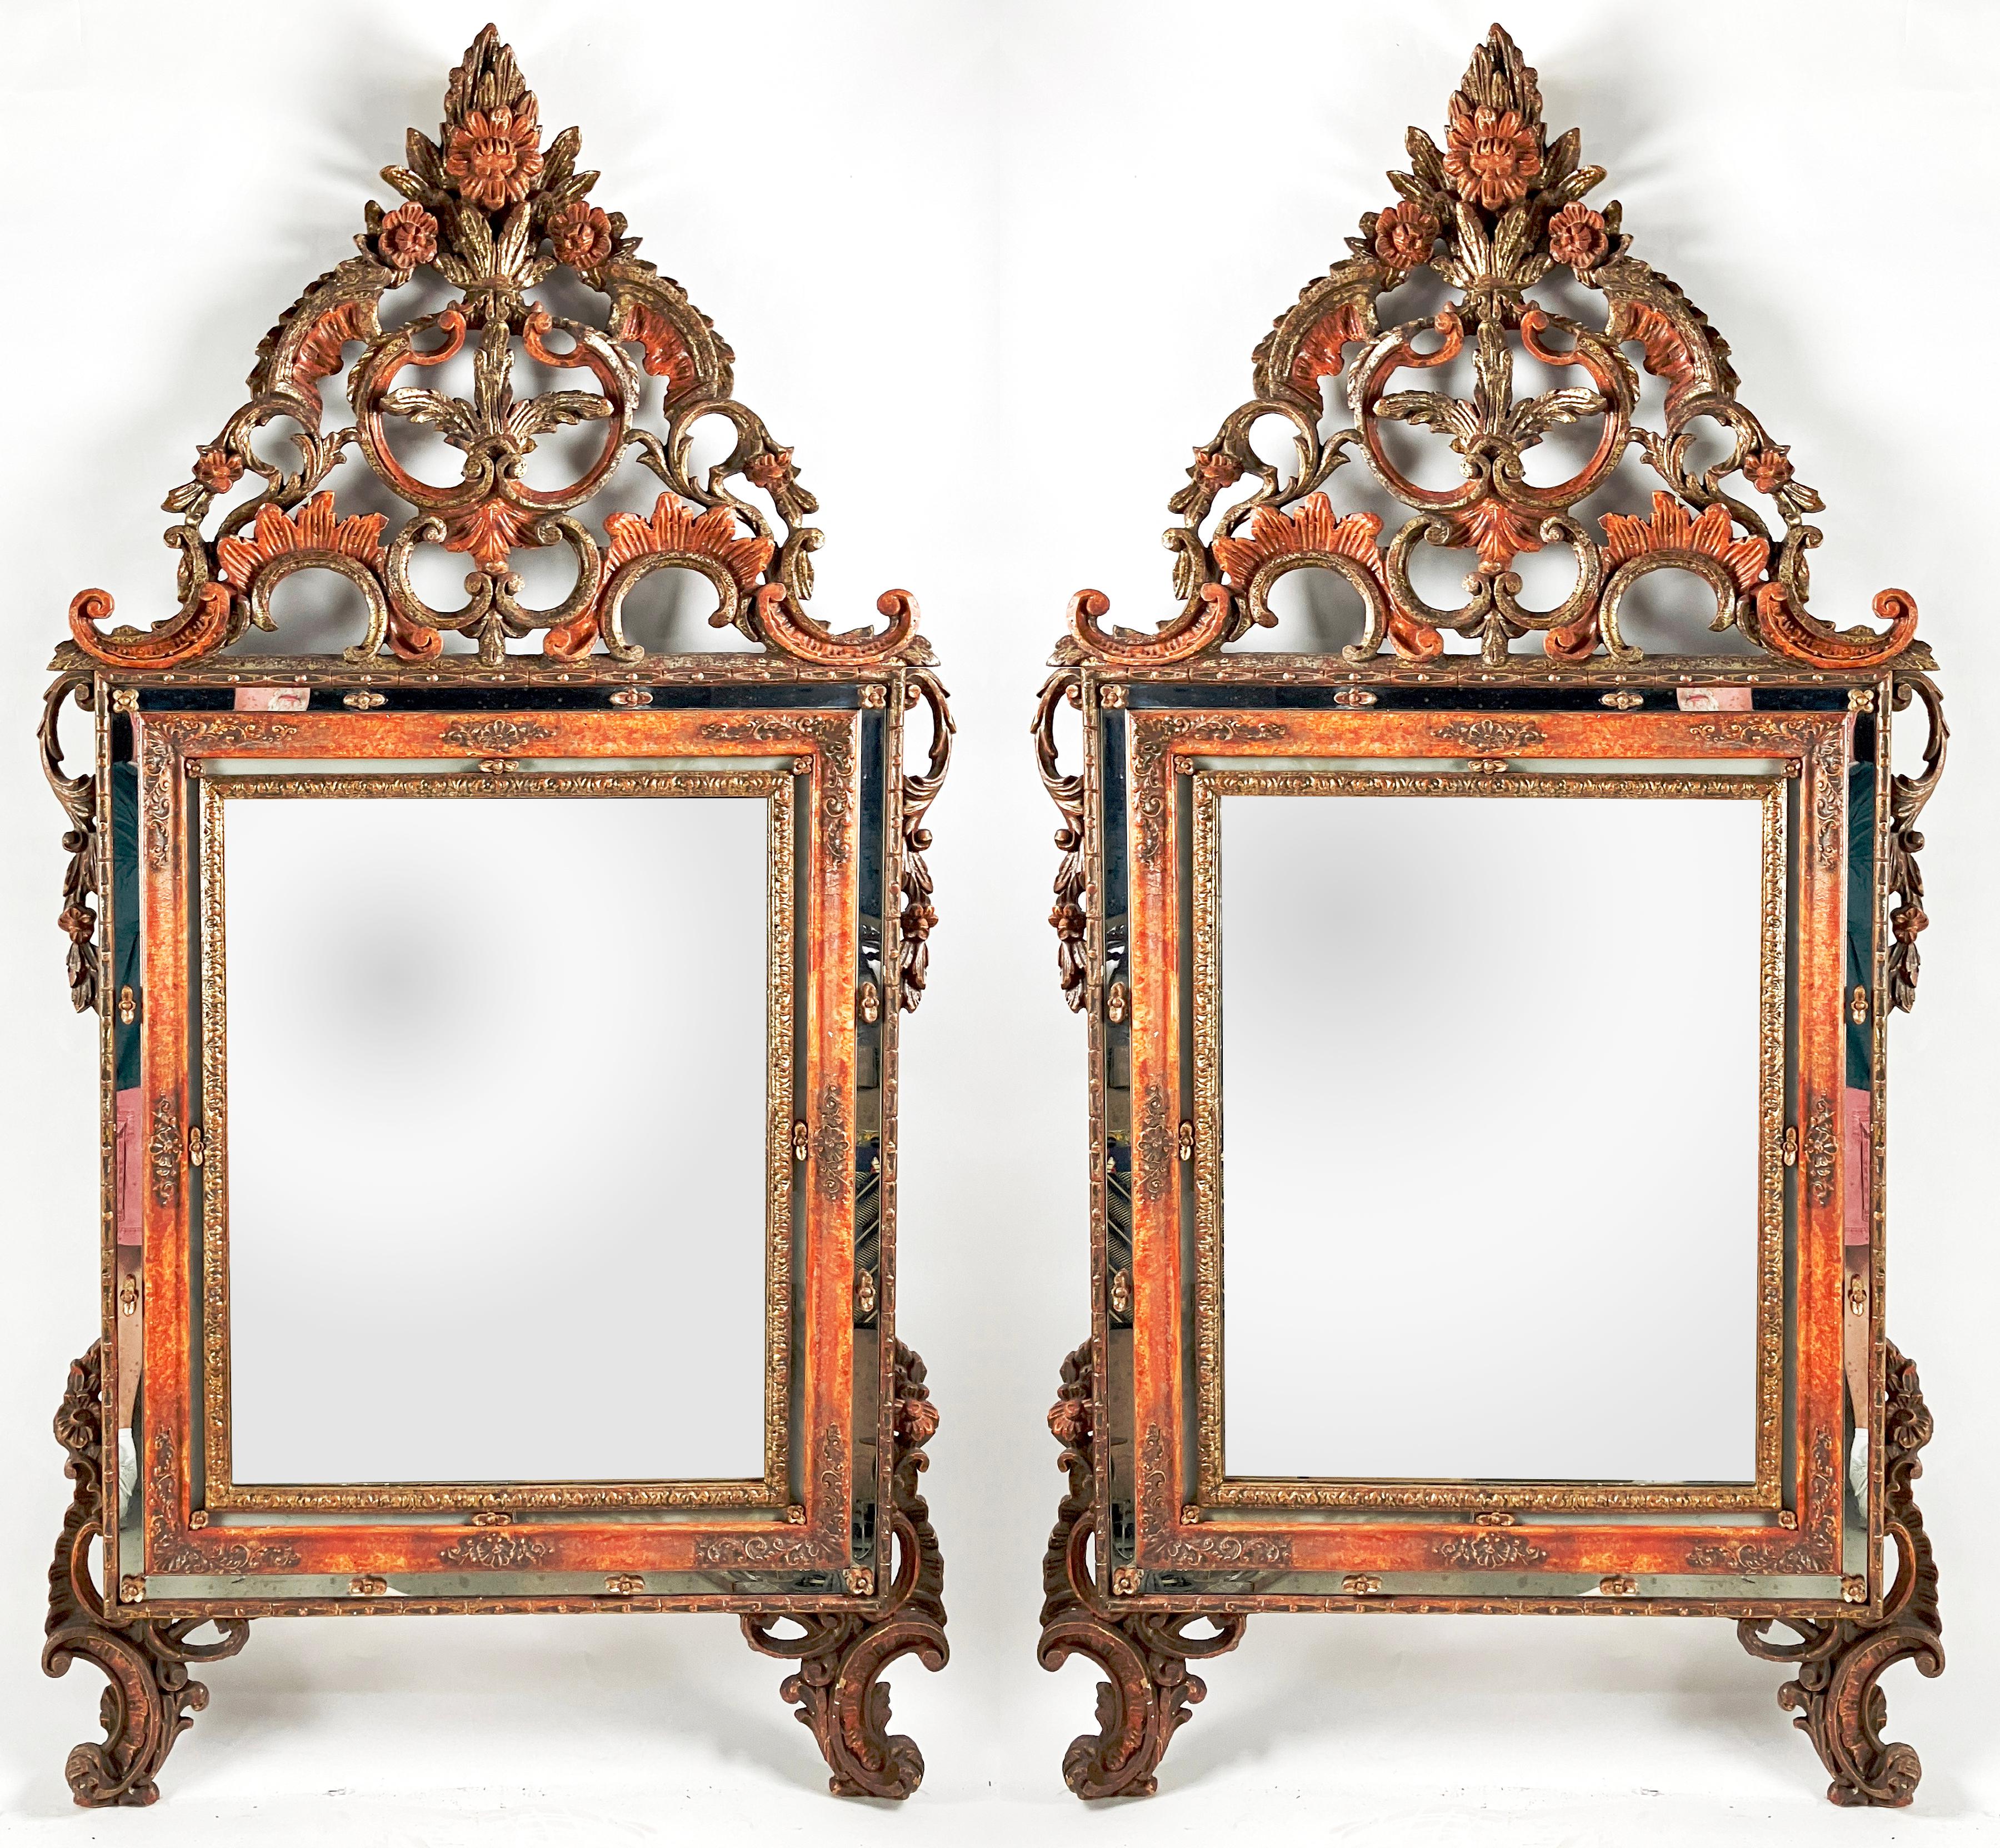 

Fabriquée à la main en Italie au début des années 1800, cette paire de miroirs vénitiens polychromes présente des sculptures dorées compensées par une peinture florale. Les miroirs de forme sont entourés d'une bordure ornée de décorations